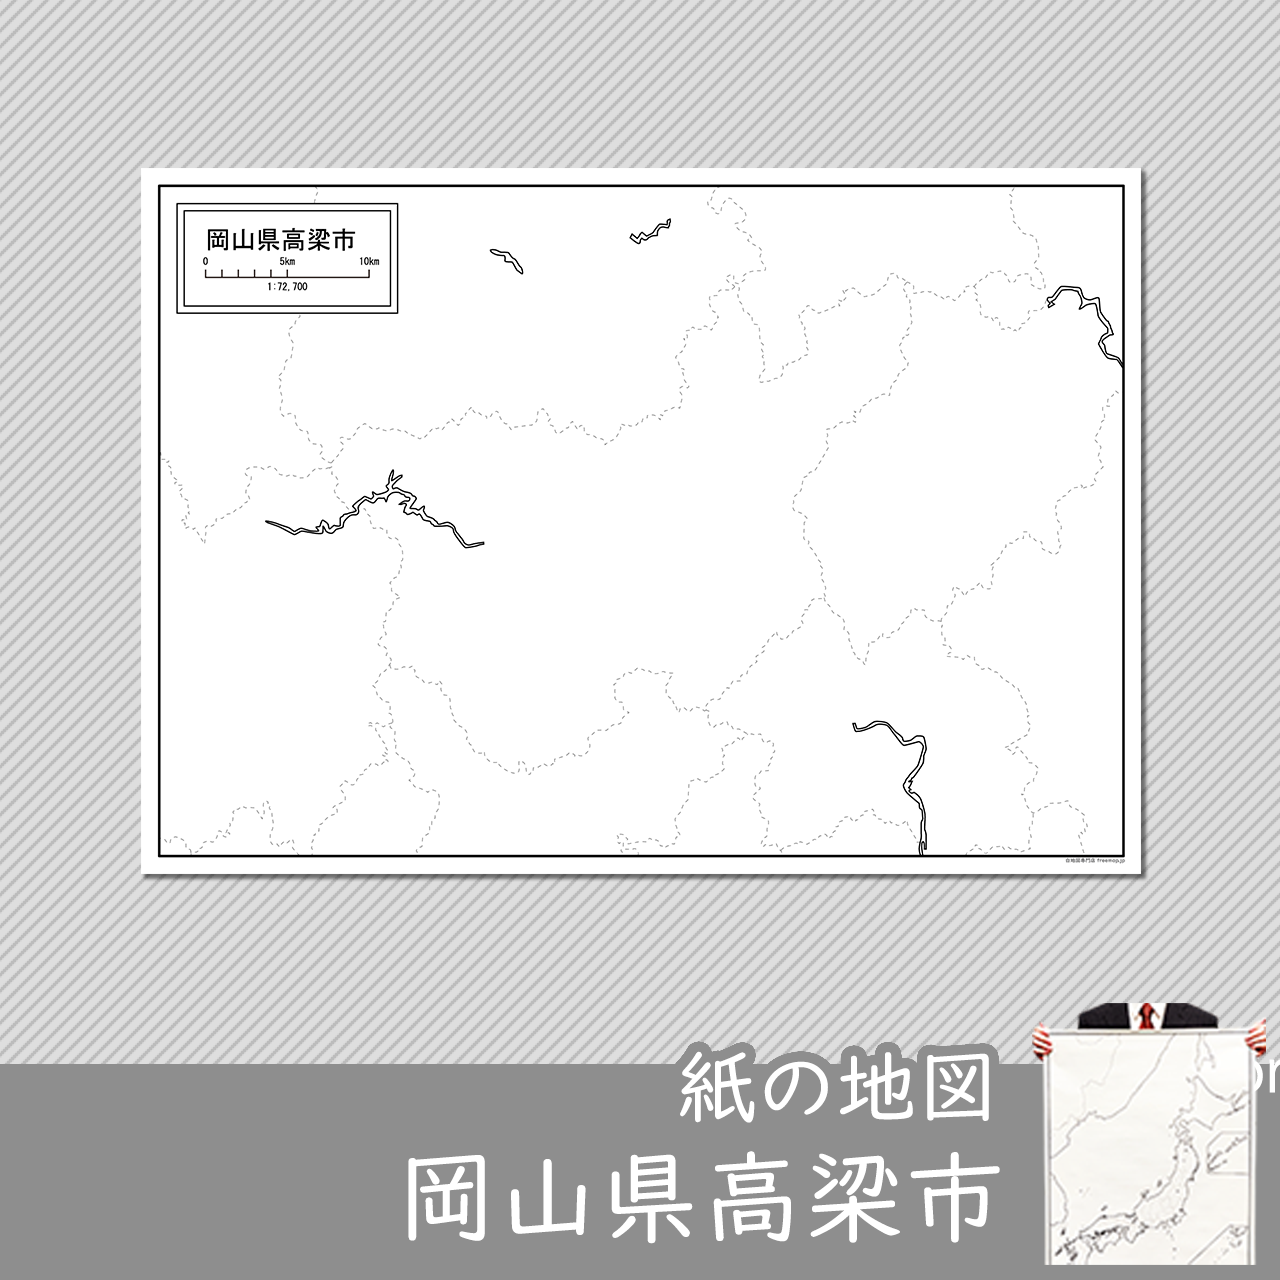 高梁市の紙の白地図のサムネイル